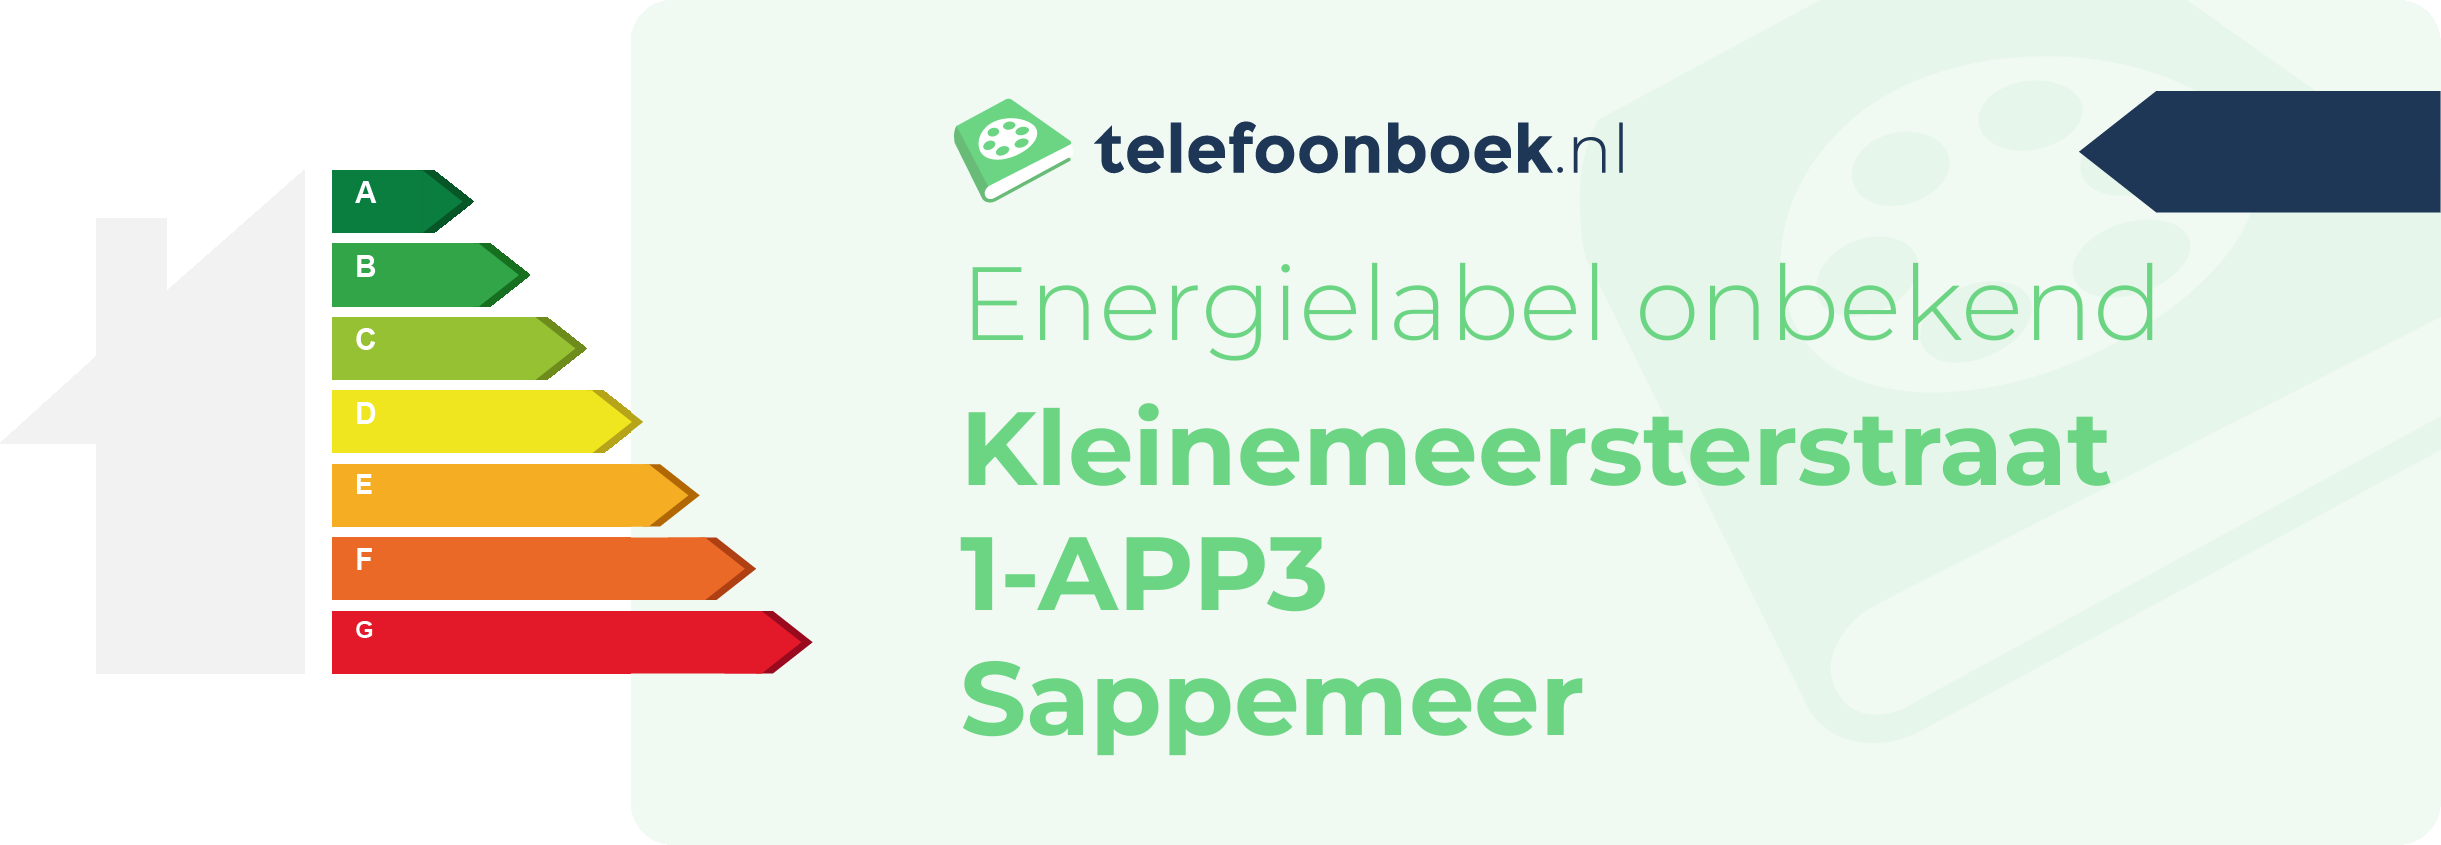 Energielabel Kleinemeersterstraat 1-APP3 Sappemeer